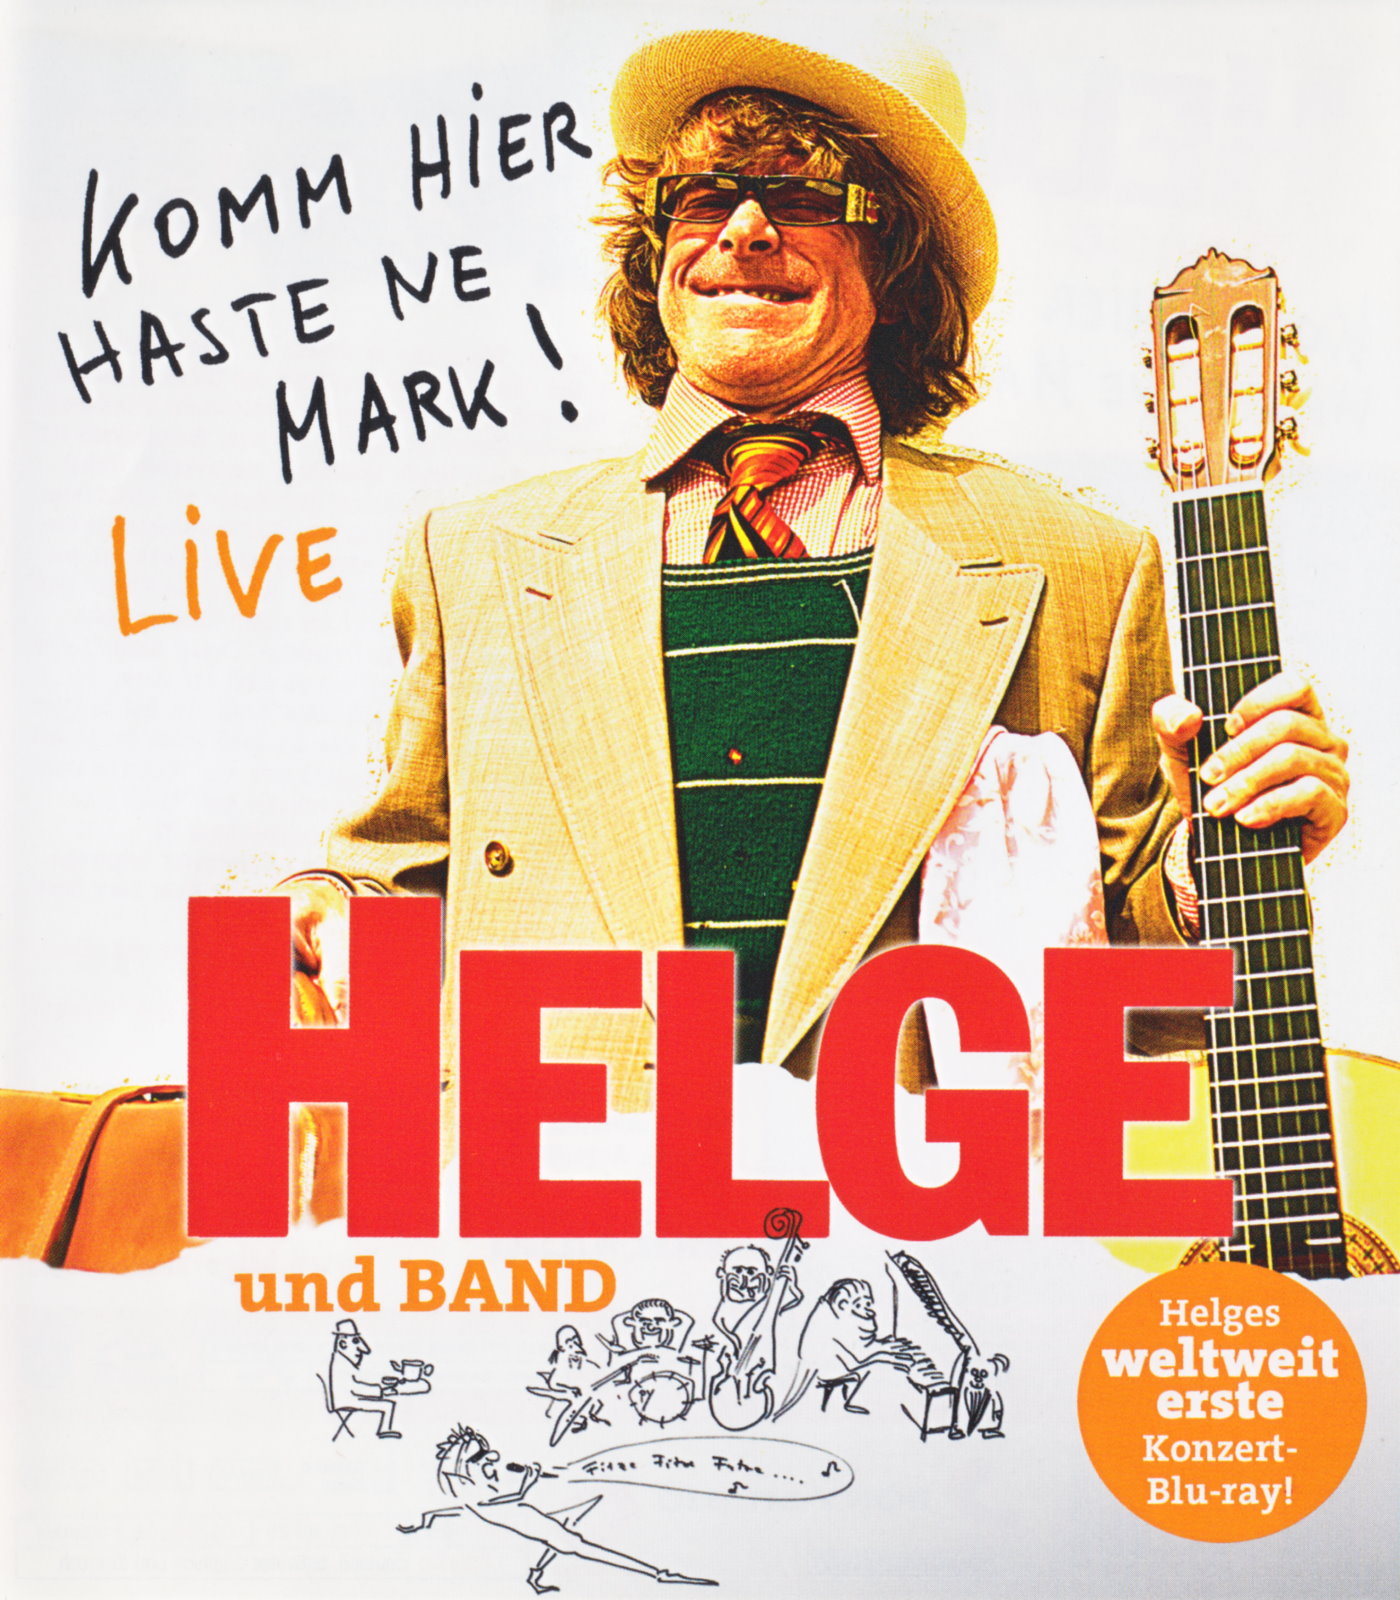 Cover - Helge Schneider und Band - Komm hier haste ne Mark! - Live.jpg